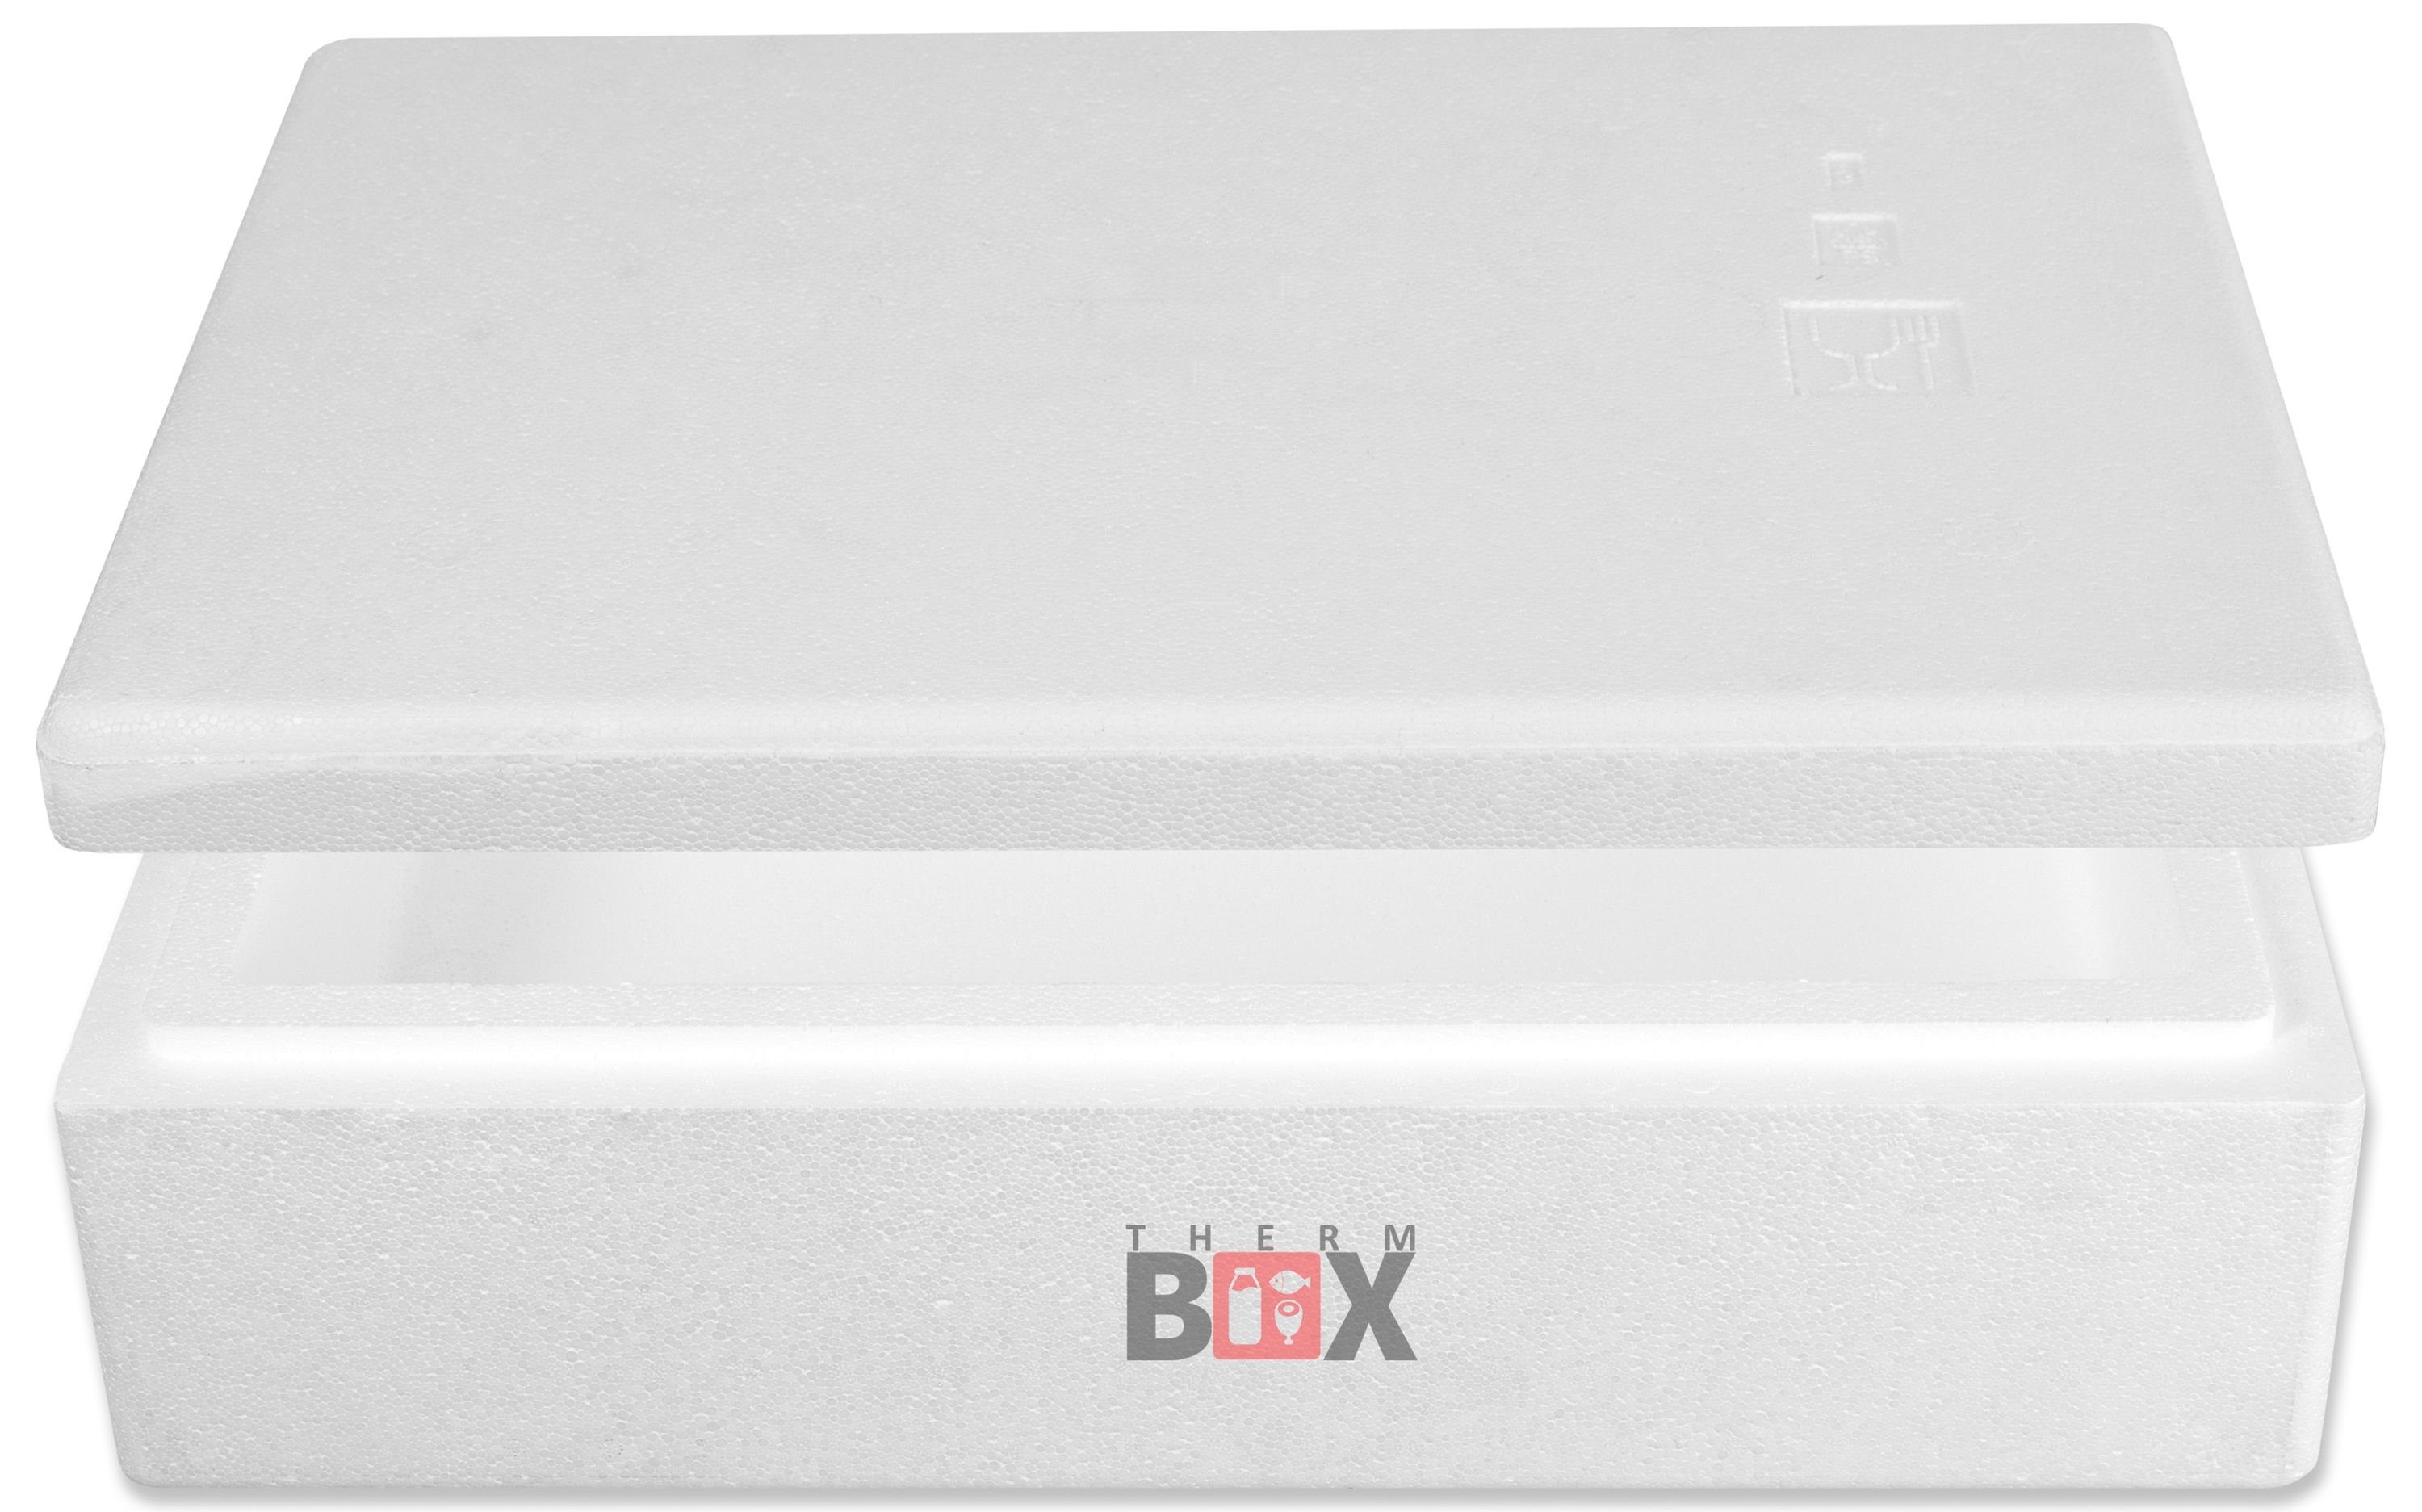 THERM-BOX Thermobehälter Modularbox 14M Innenmaß:50x30x9cm, im Thermbox Box Karton), Wiederverwendbar 14L Erweiterbar Isolierbox Warmhaltebox (0-tlg., Styropor-Verdichtet, Kühlbox mit Deckel 4cm Wand